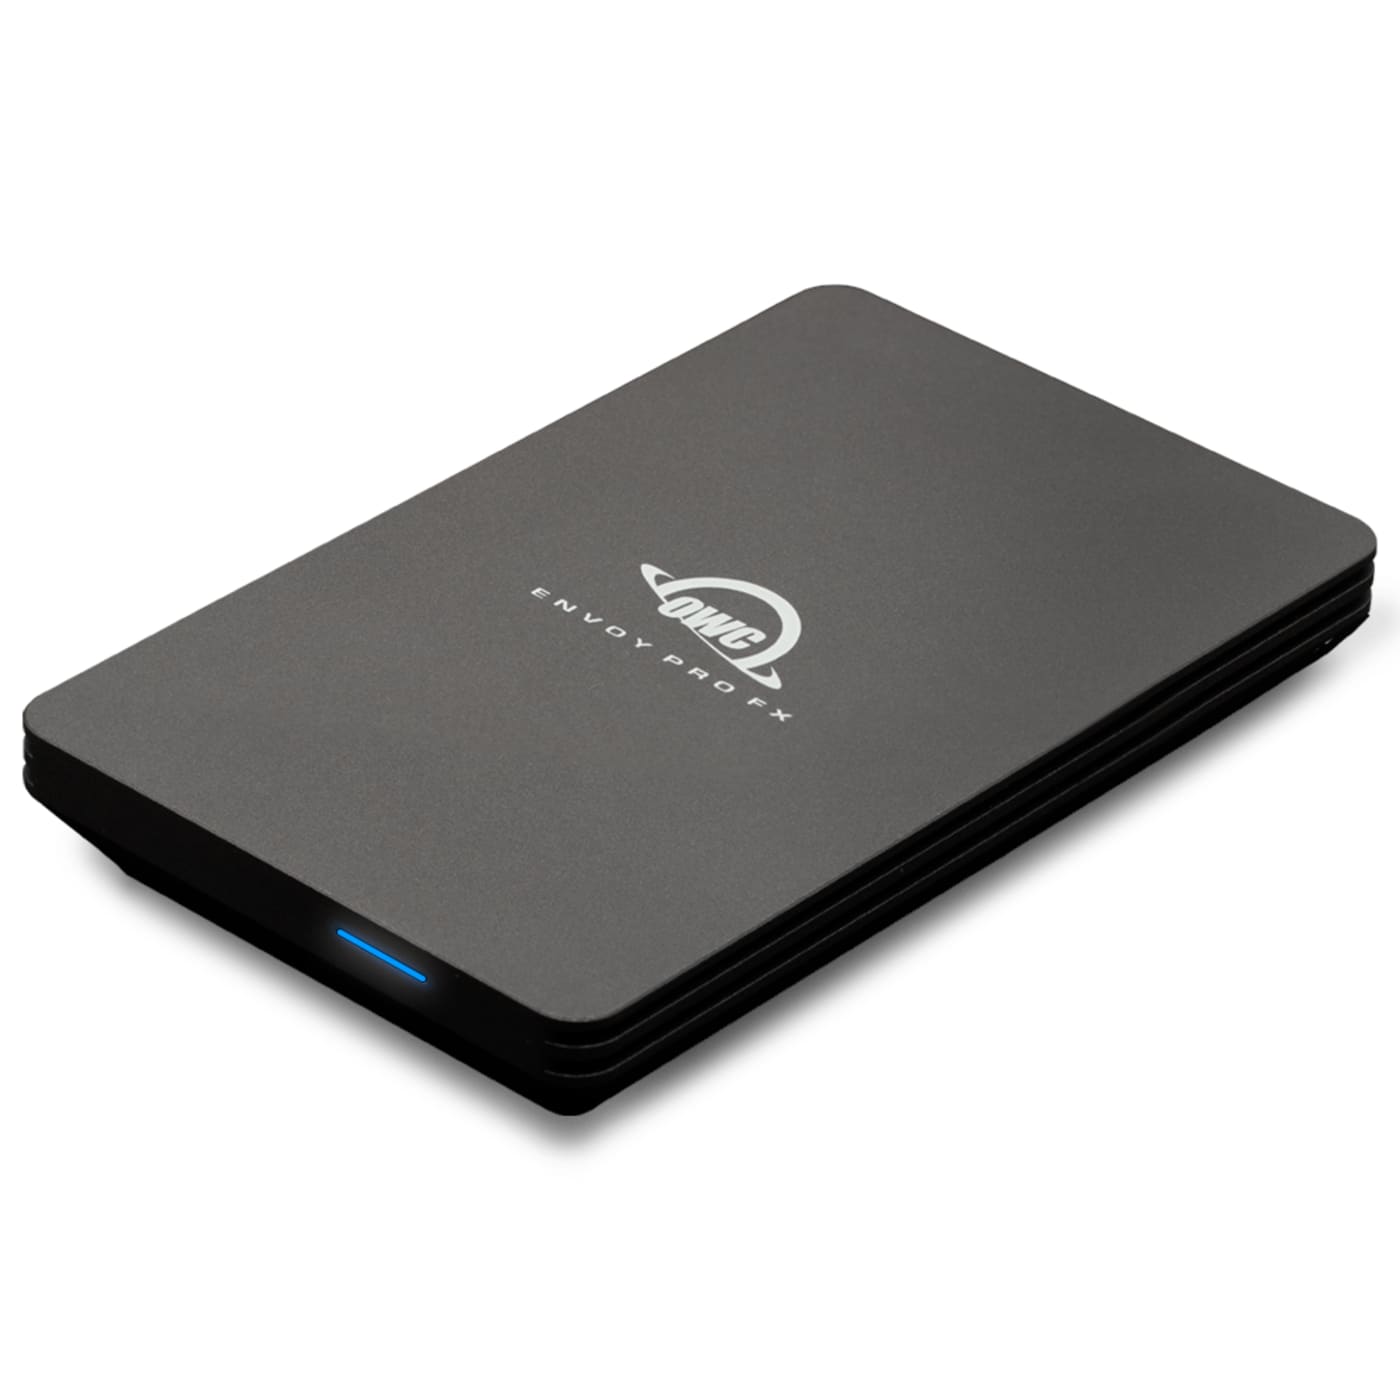 OWC 480 Go OWC Envoy Pro EX avec Thunderbolt 3 - SSD externe ultra-compact  robuste et hautes performances - LE MAC URBAIN